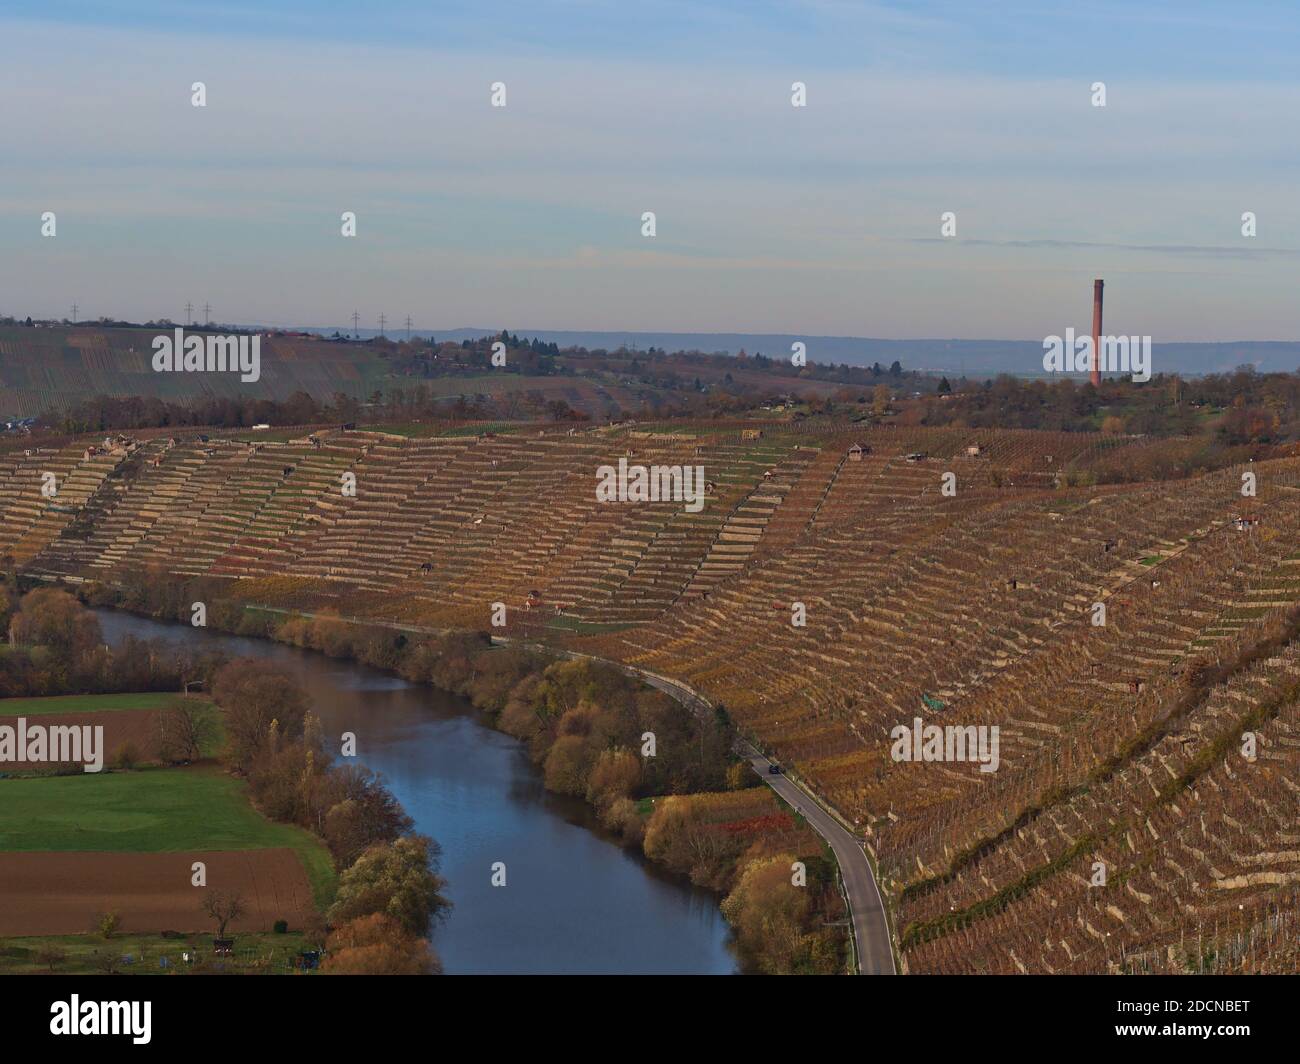 Belle vue sur le fleuve Neckar paisible dans une vallée avec des vignobles en terrasse sur la pente et des arbres colorés sur les berges en automne. Banque D'Images